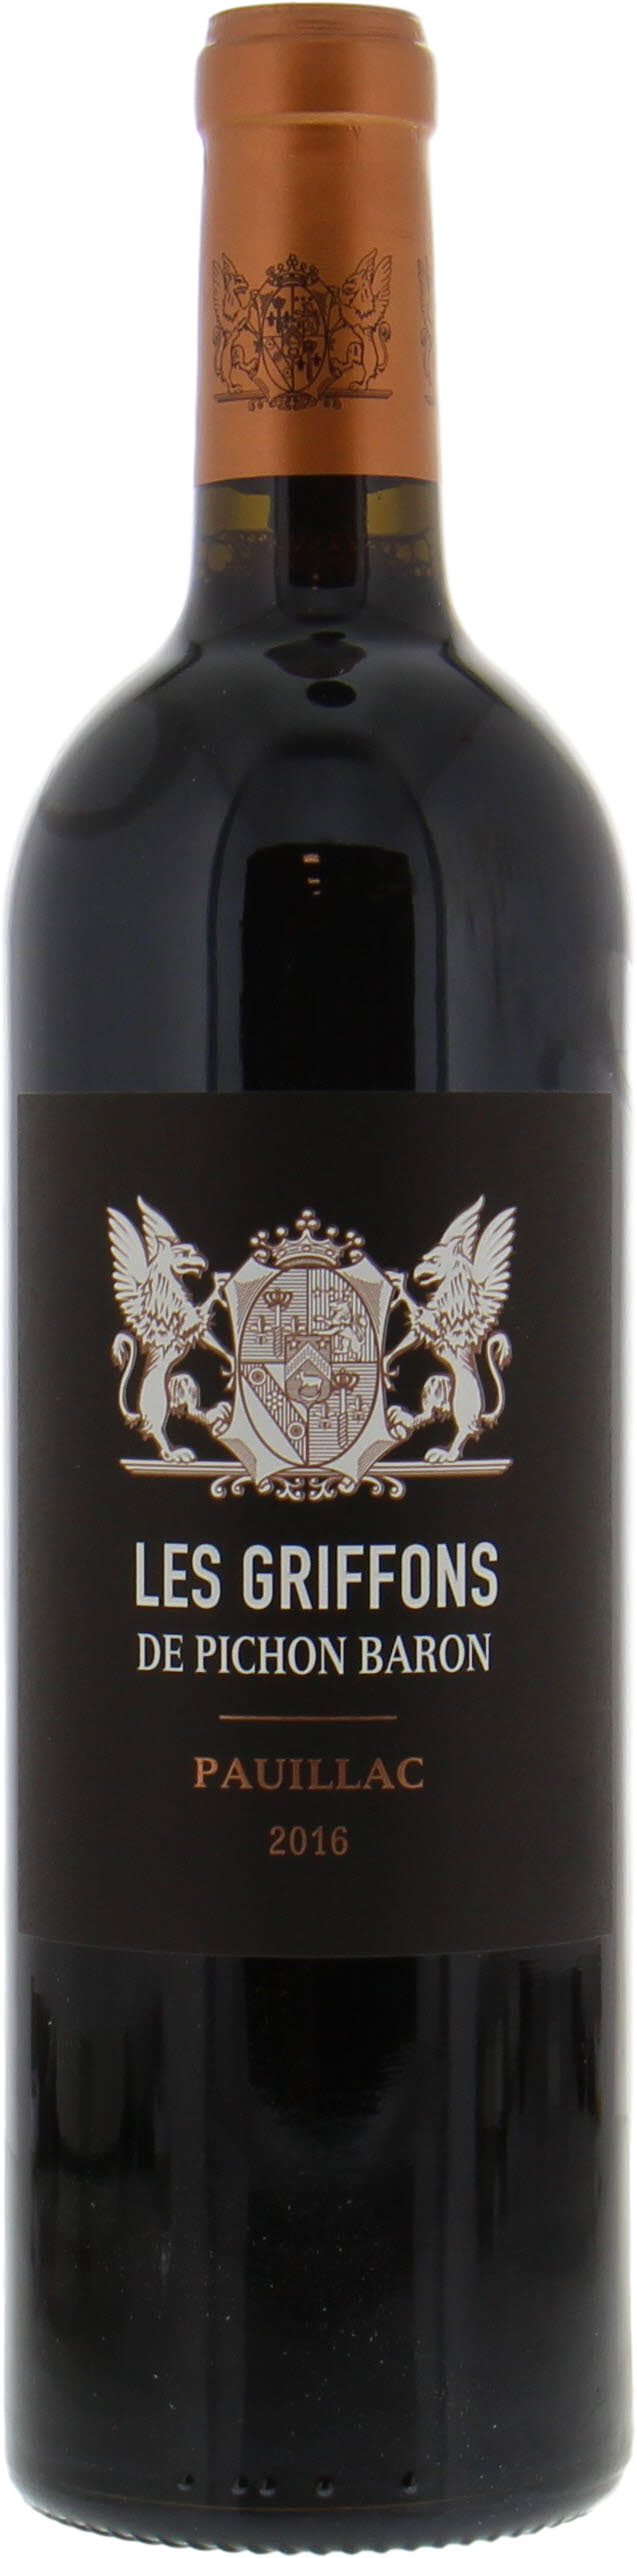 Chateau Pichon Longueville Baron - Les Griffons de Pichon Baron 2016 Perfect